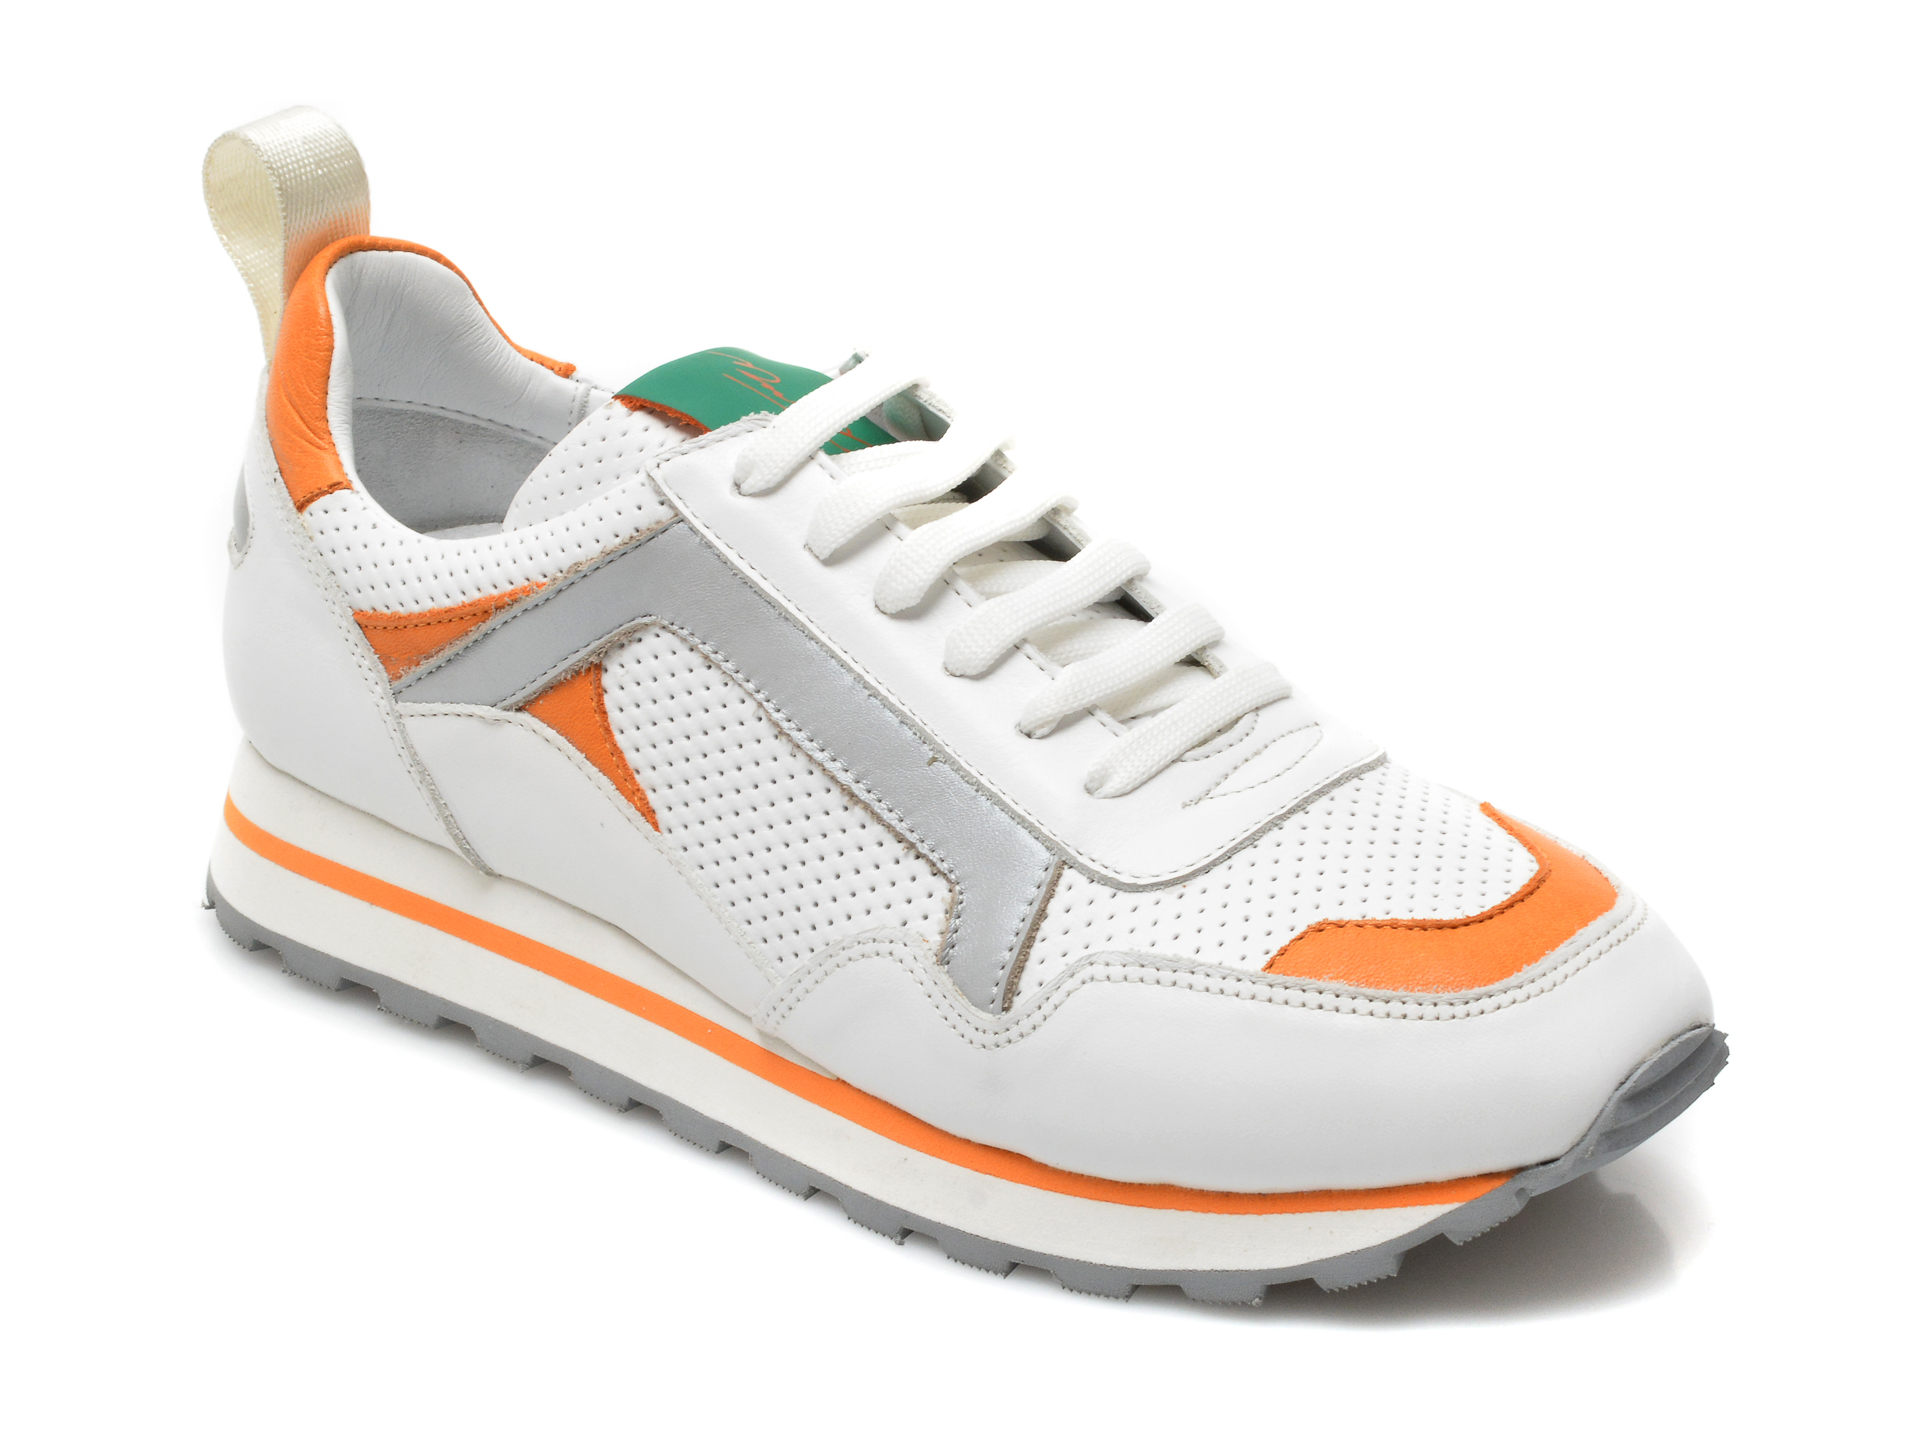 Pantofi sport MARIO MUZI albi, 261, din piele naturala MARIO MUZI imagine noua